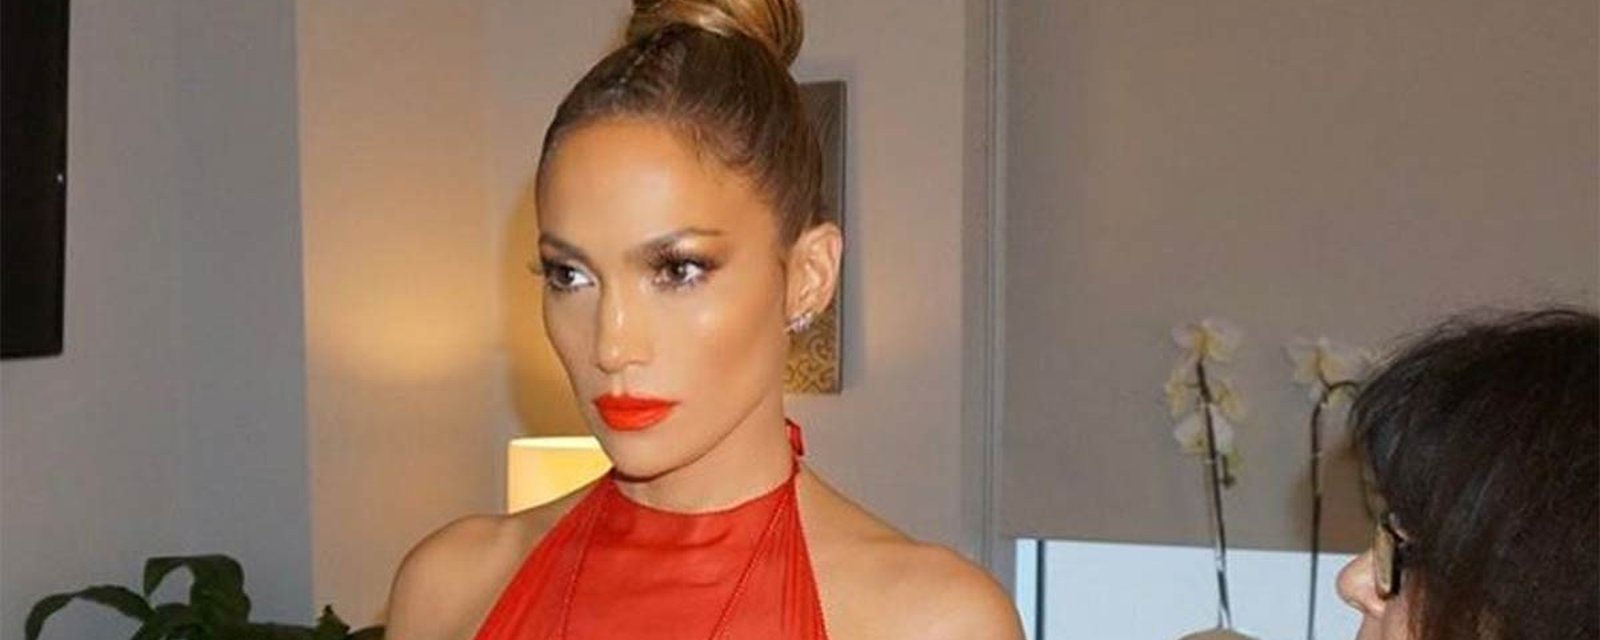 À 47 ans, Jennifer Lopez se dénude sur Instagram... et l'Internet s'enflamme!